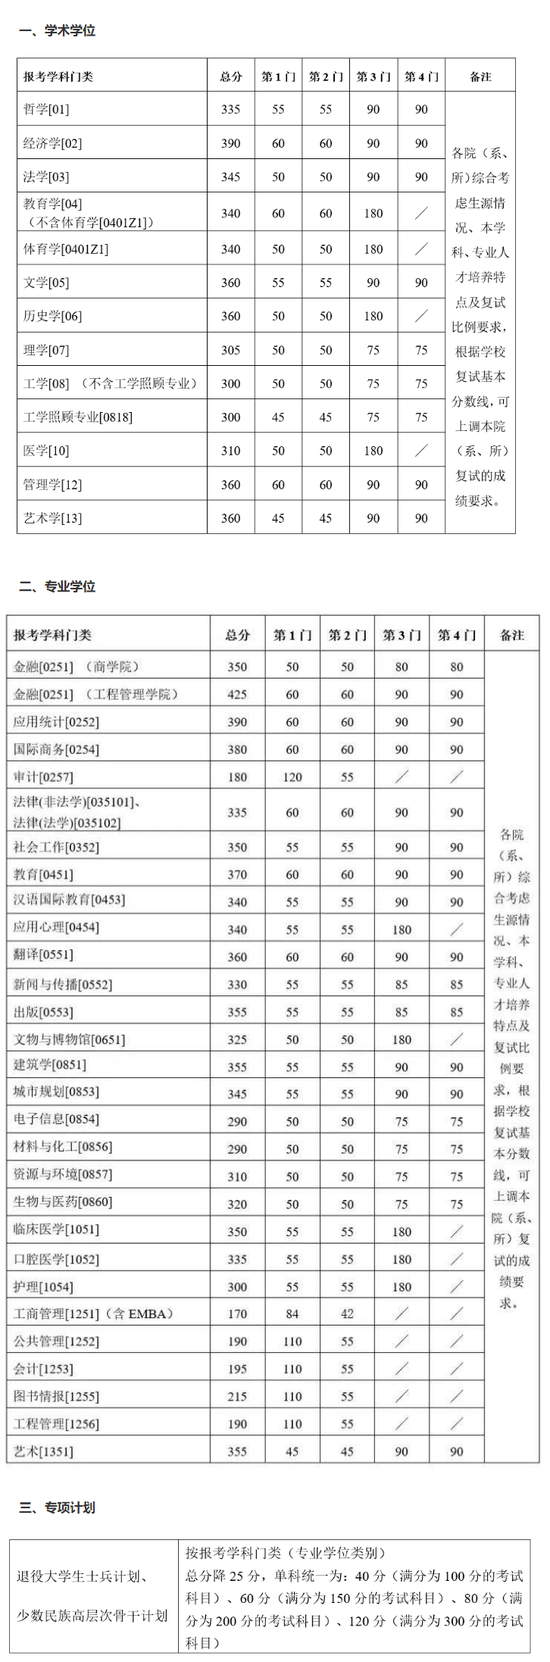 2021年南京大学考研复试分数线公布